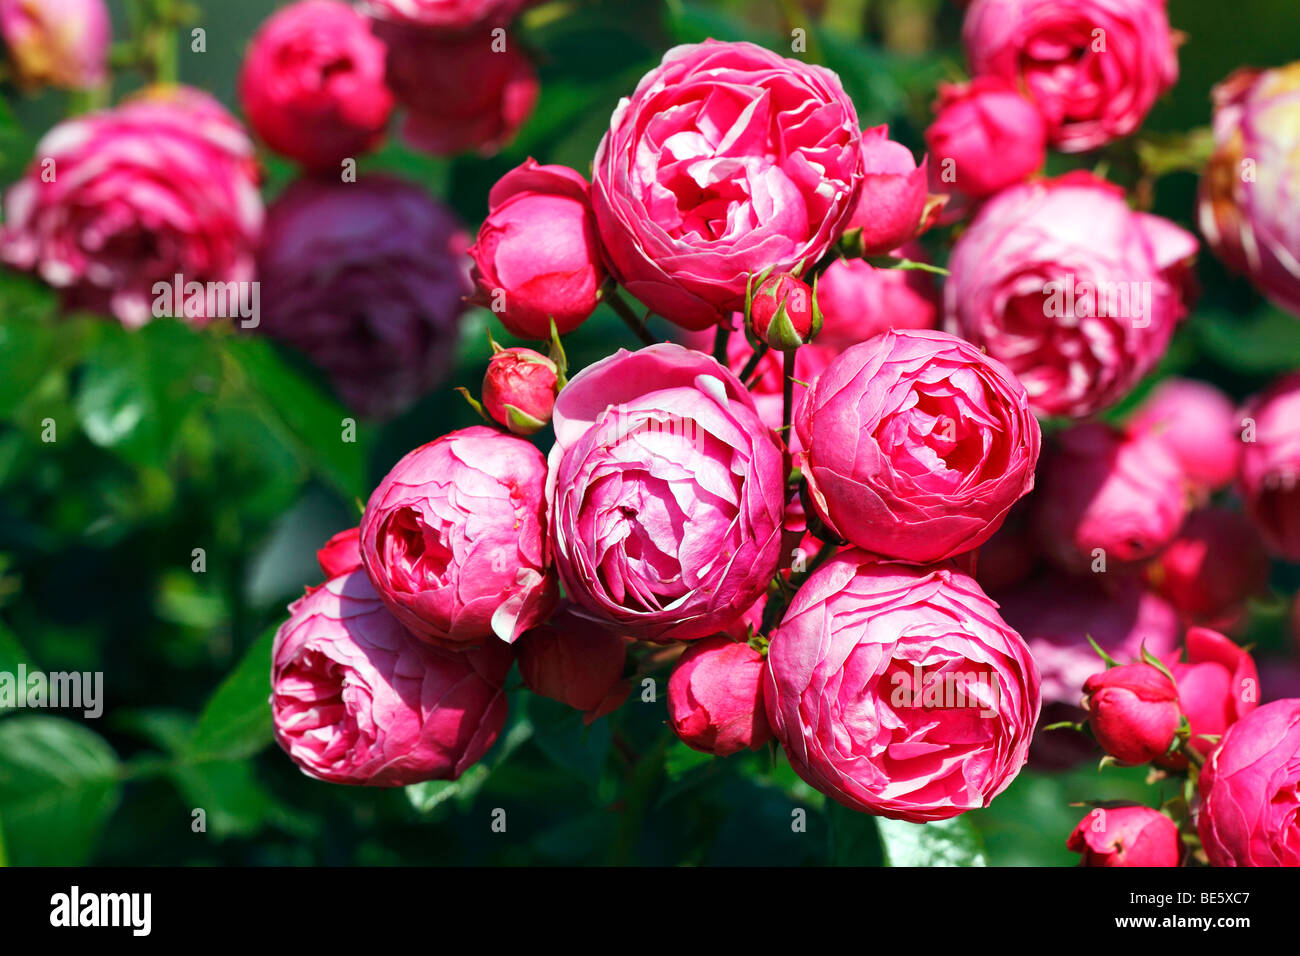 Rose Pomponella (Rosa cultivar Pomponella) Stock Photo